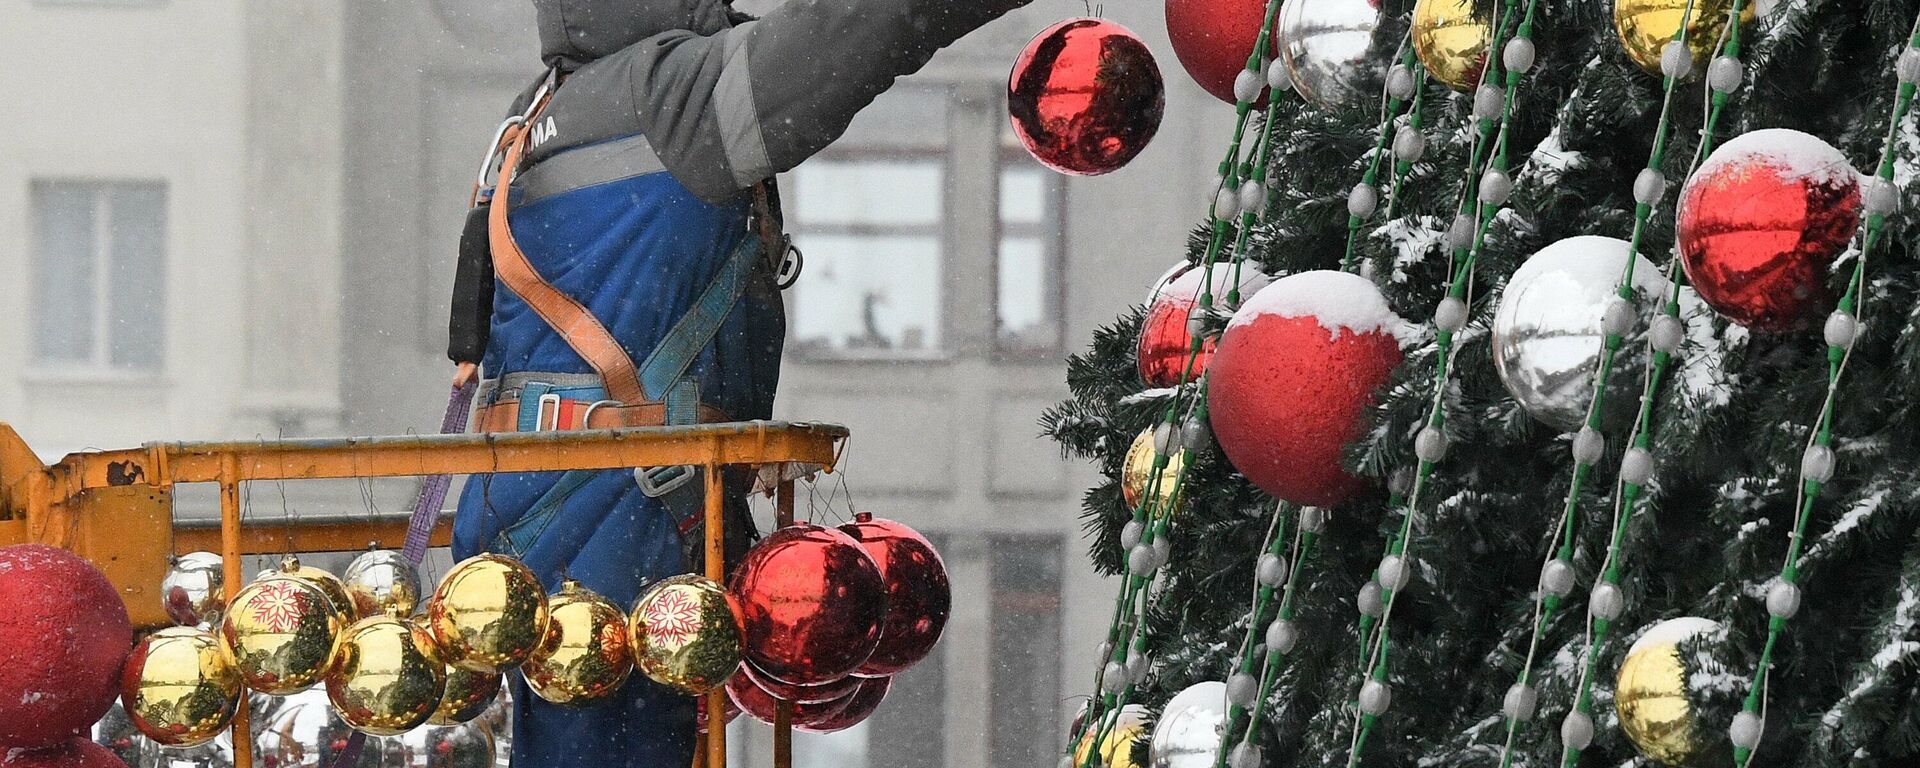 В Минске устанавливают Главную елку на Октябрьской площади - Sputnik Беларусь, 1920, 30.11.2021